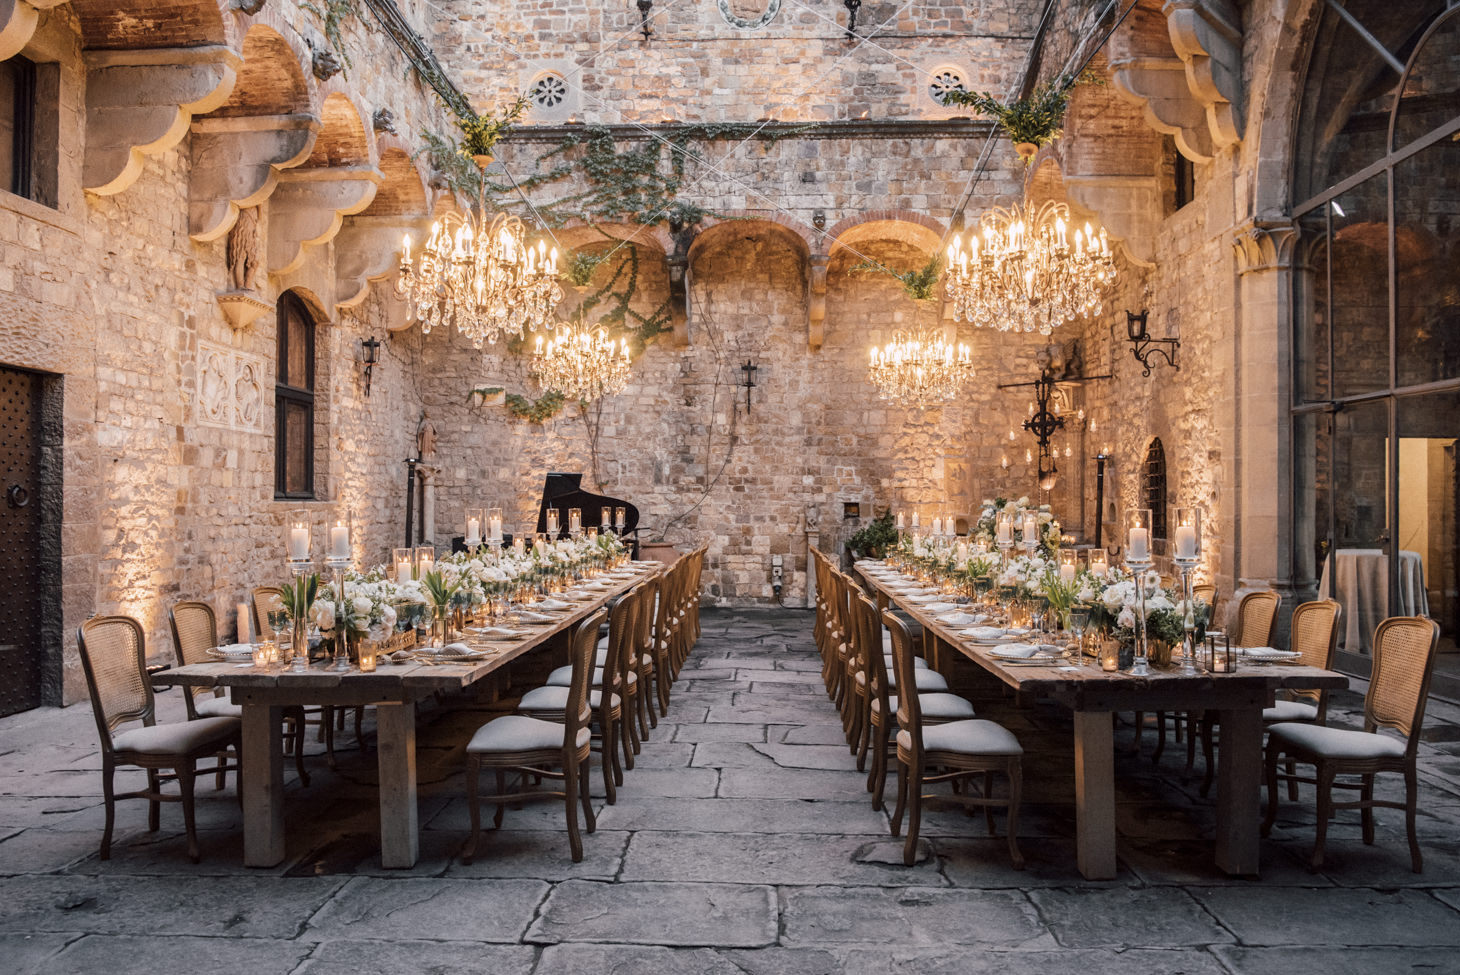 Wedding banquet at Vincigliata Castle